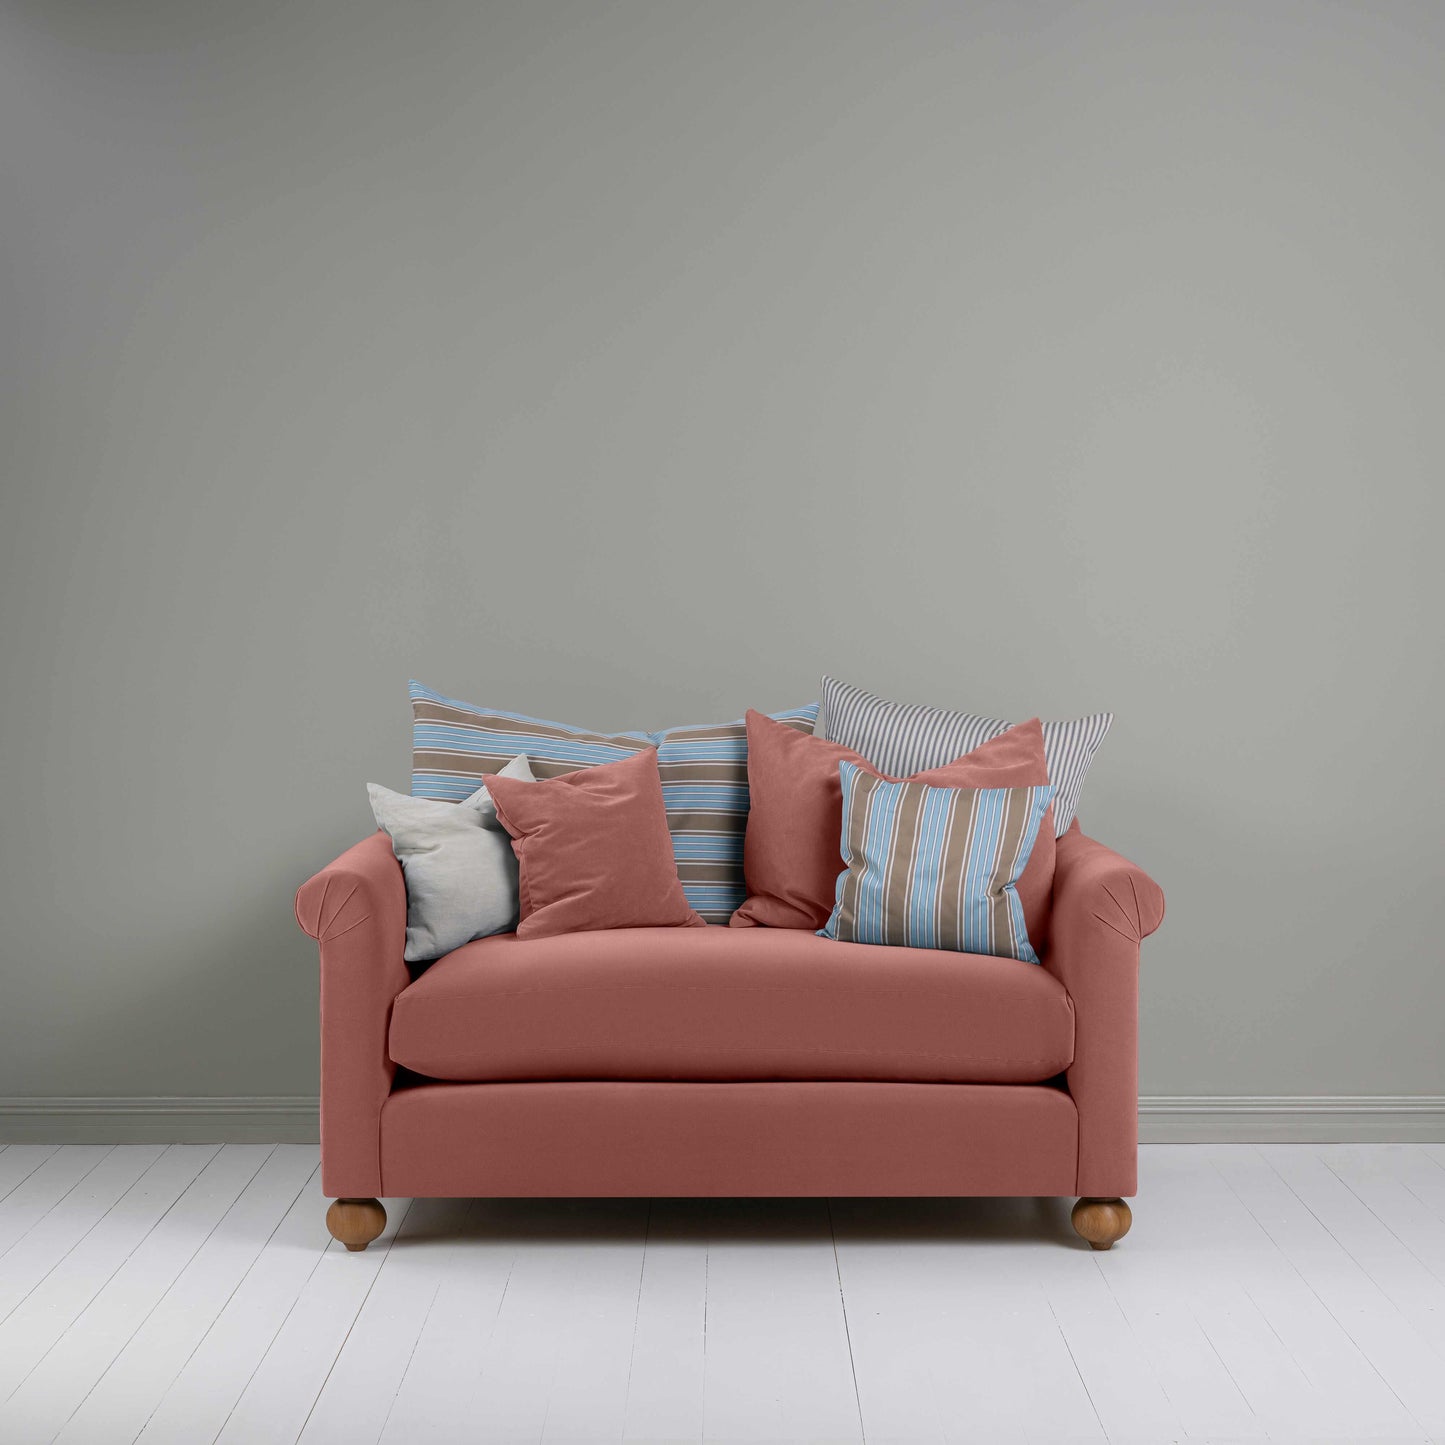 Dolittle 2 Seater Sofa in Intelligent Velvet Damson